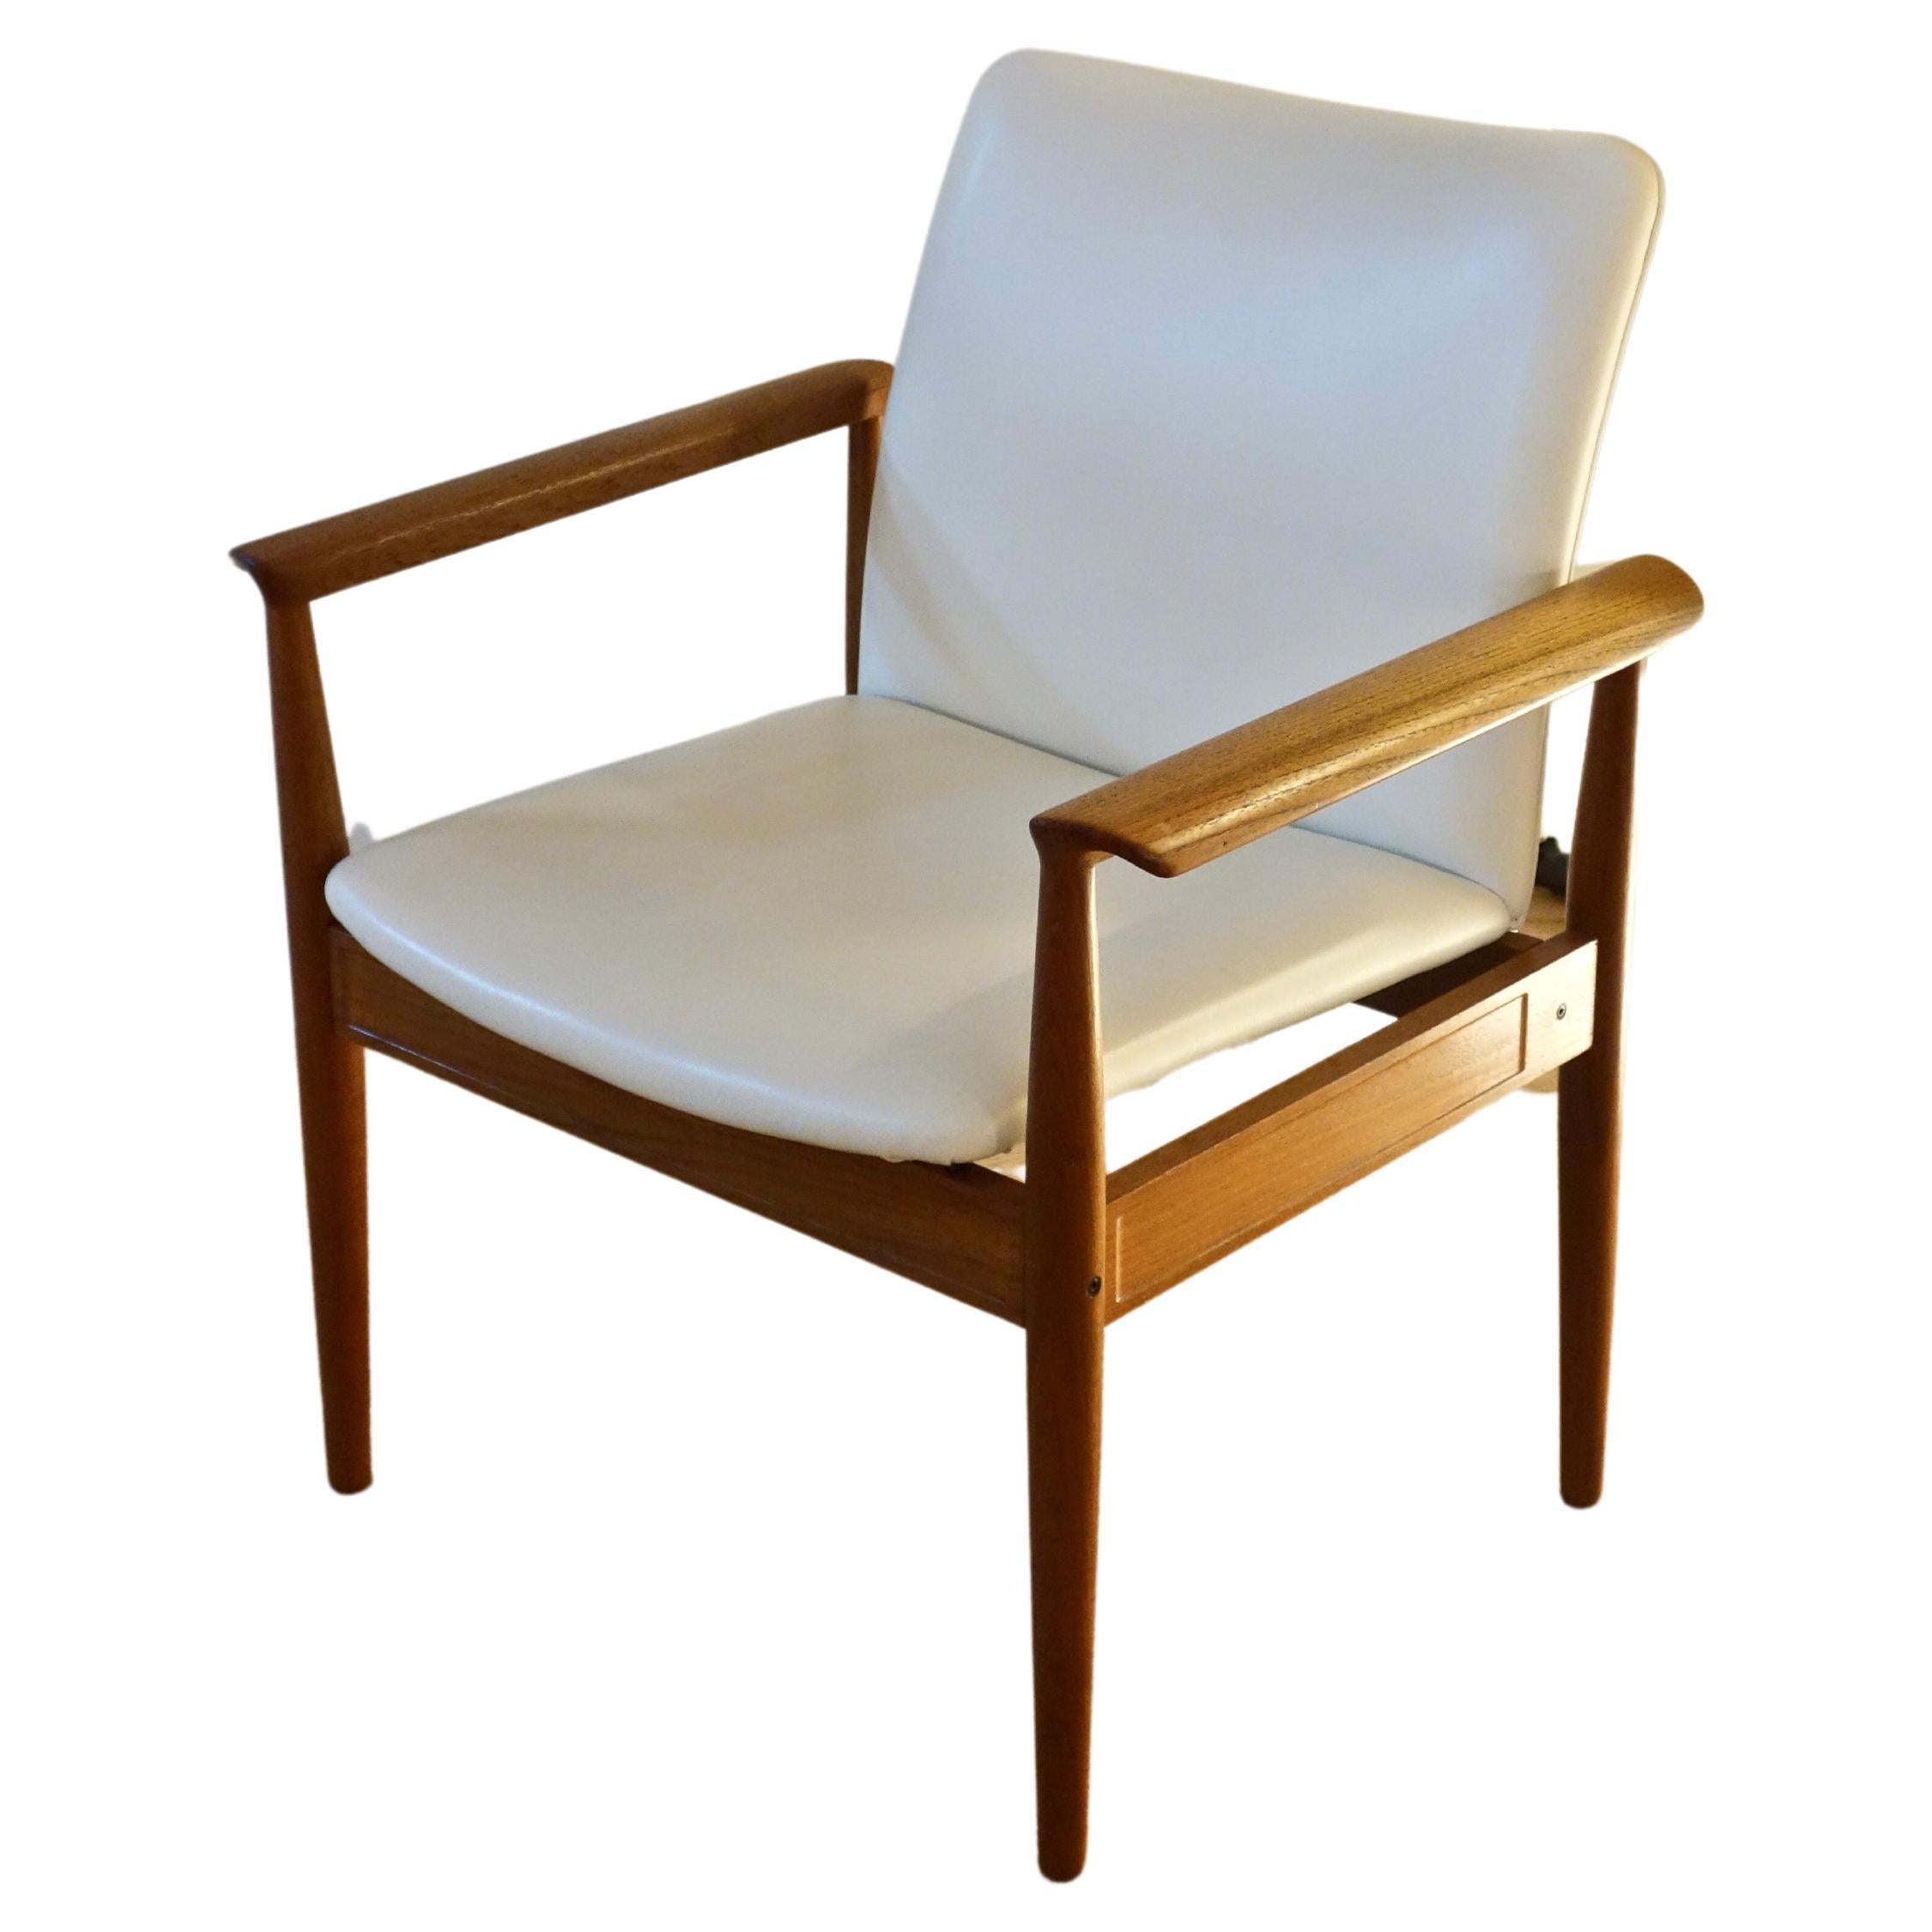 Danish teak armchair 209 Diplomat by Finn Juhl for France & Søn 1960s